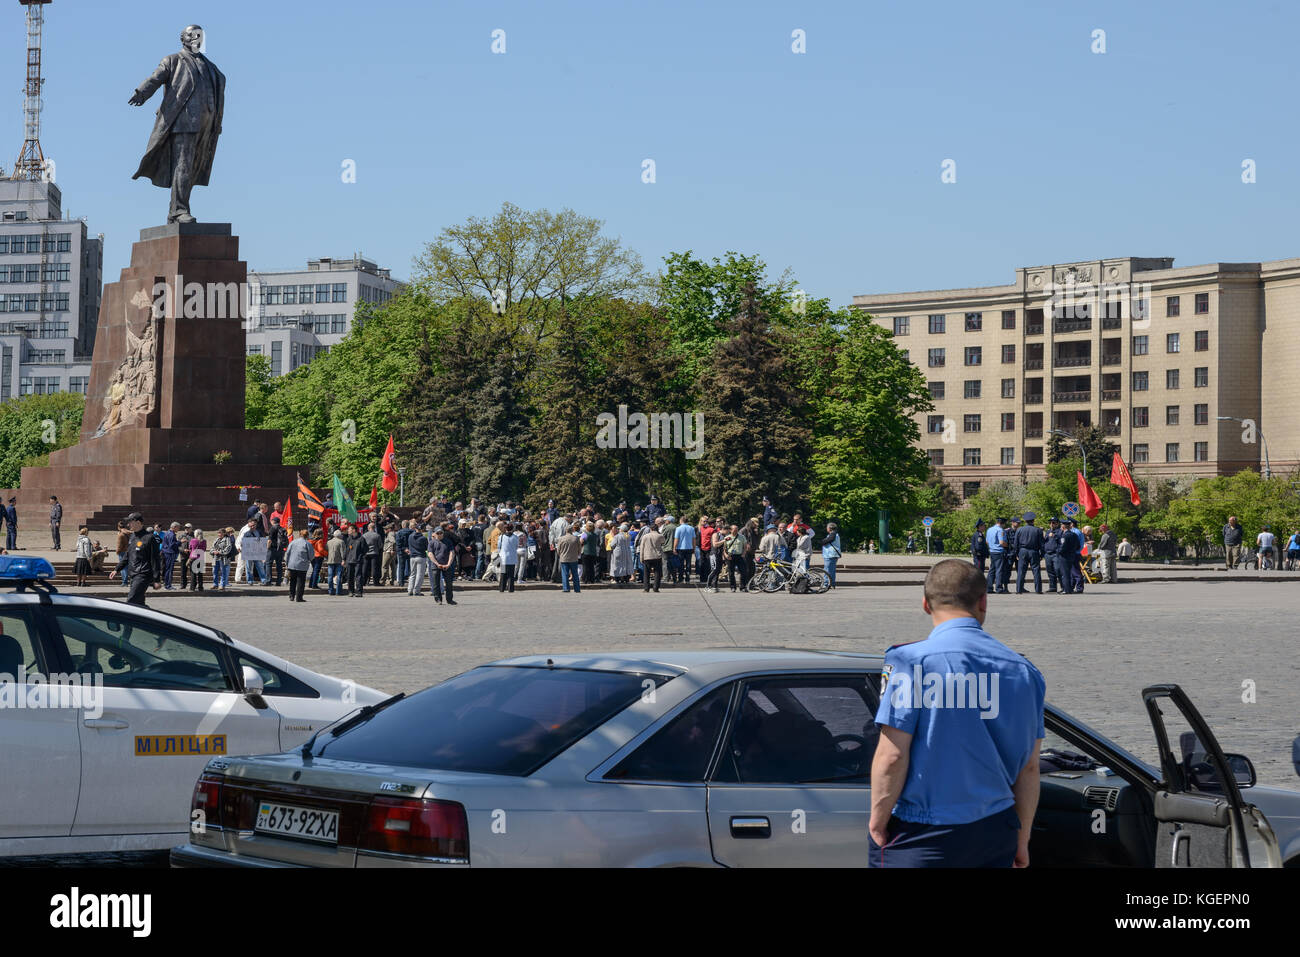 Charkow, Ukraine - Mai 03, 2014: Protest auf dem Platz vor der Regierungspalast nach dem Maidan Fakten in Charkiw, Polizei beobachten. Übrigens, die Stockfoto